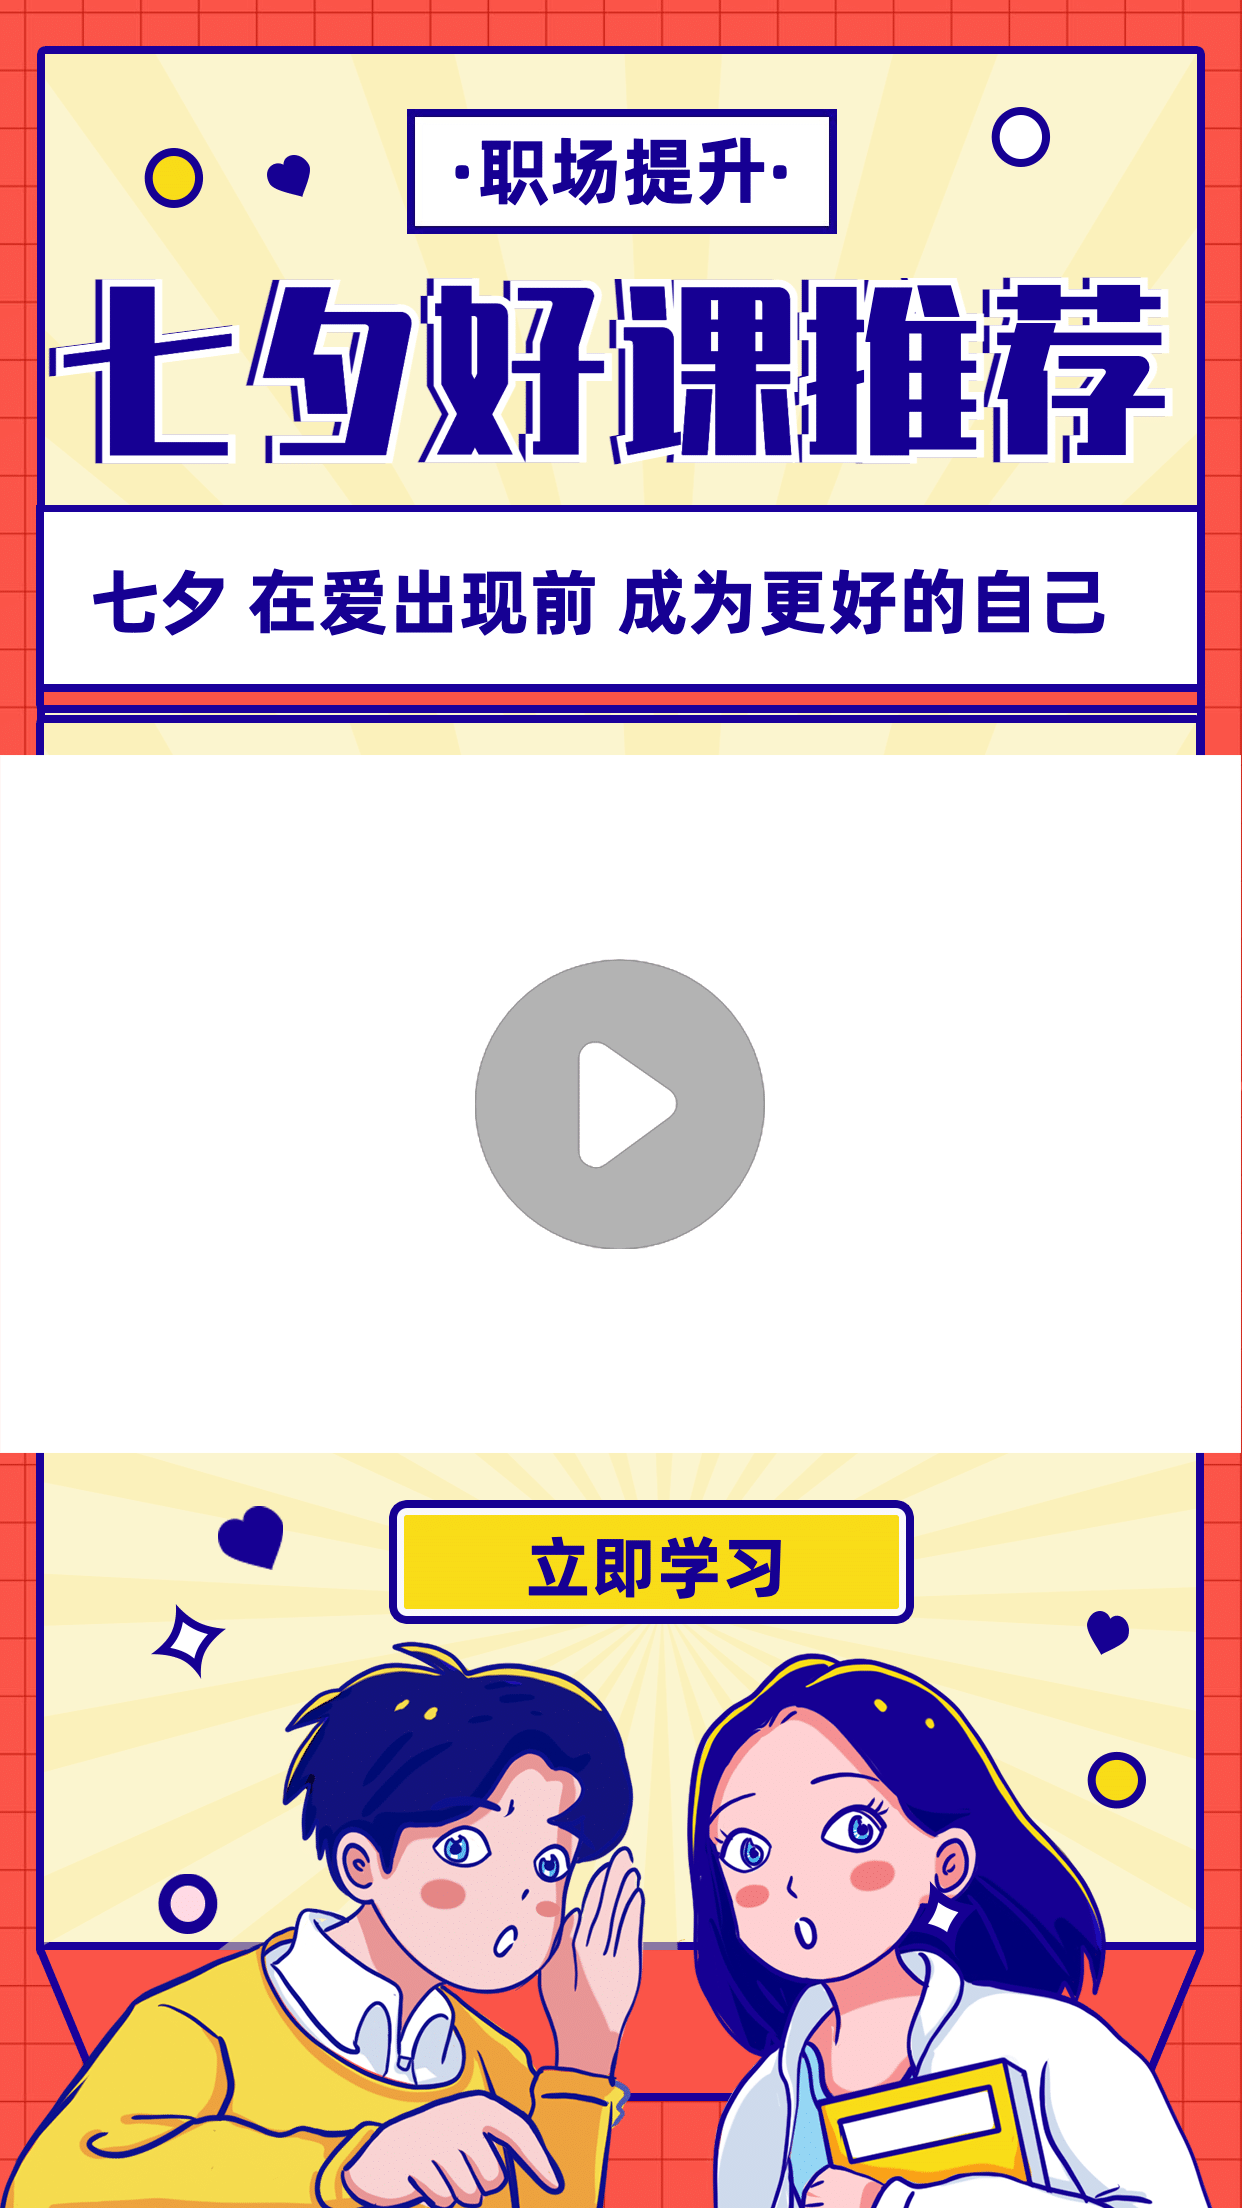 七夕情人节直播课程推荐视频边框预览效果